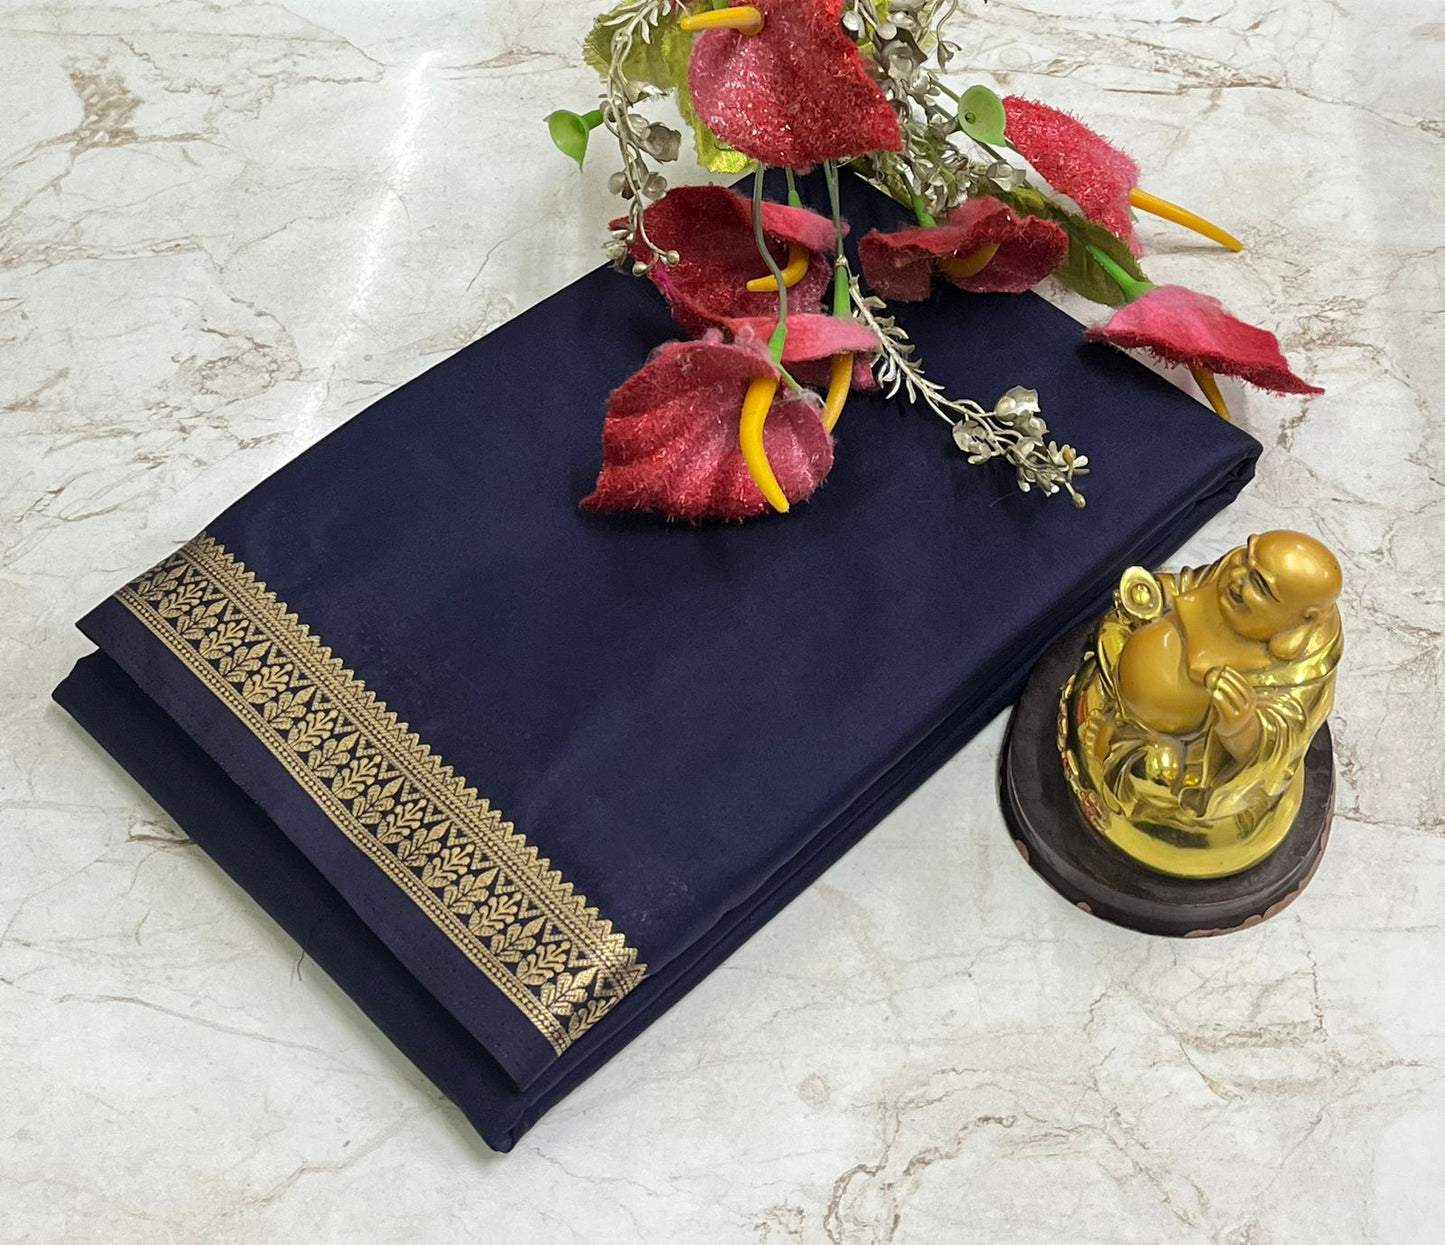 Mysore silk crepe saree